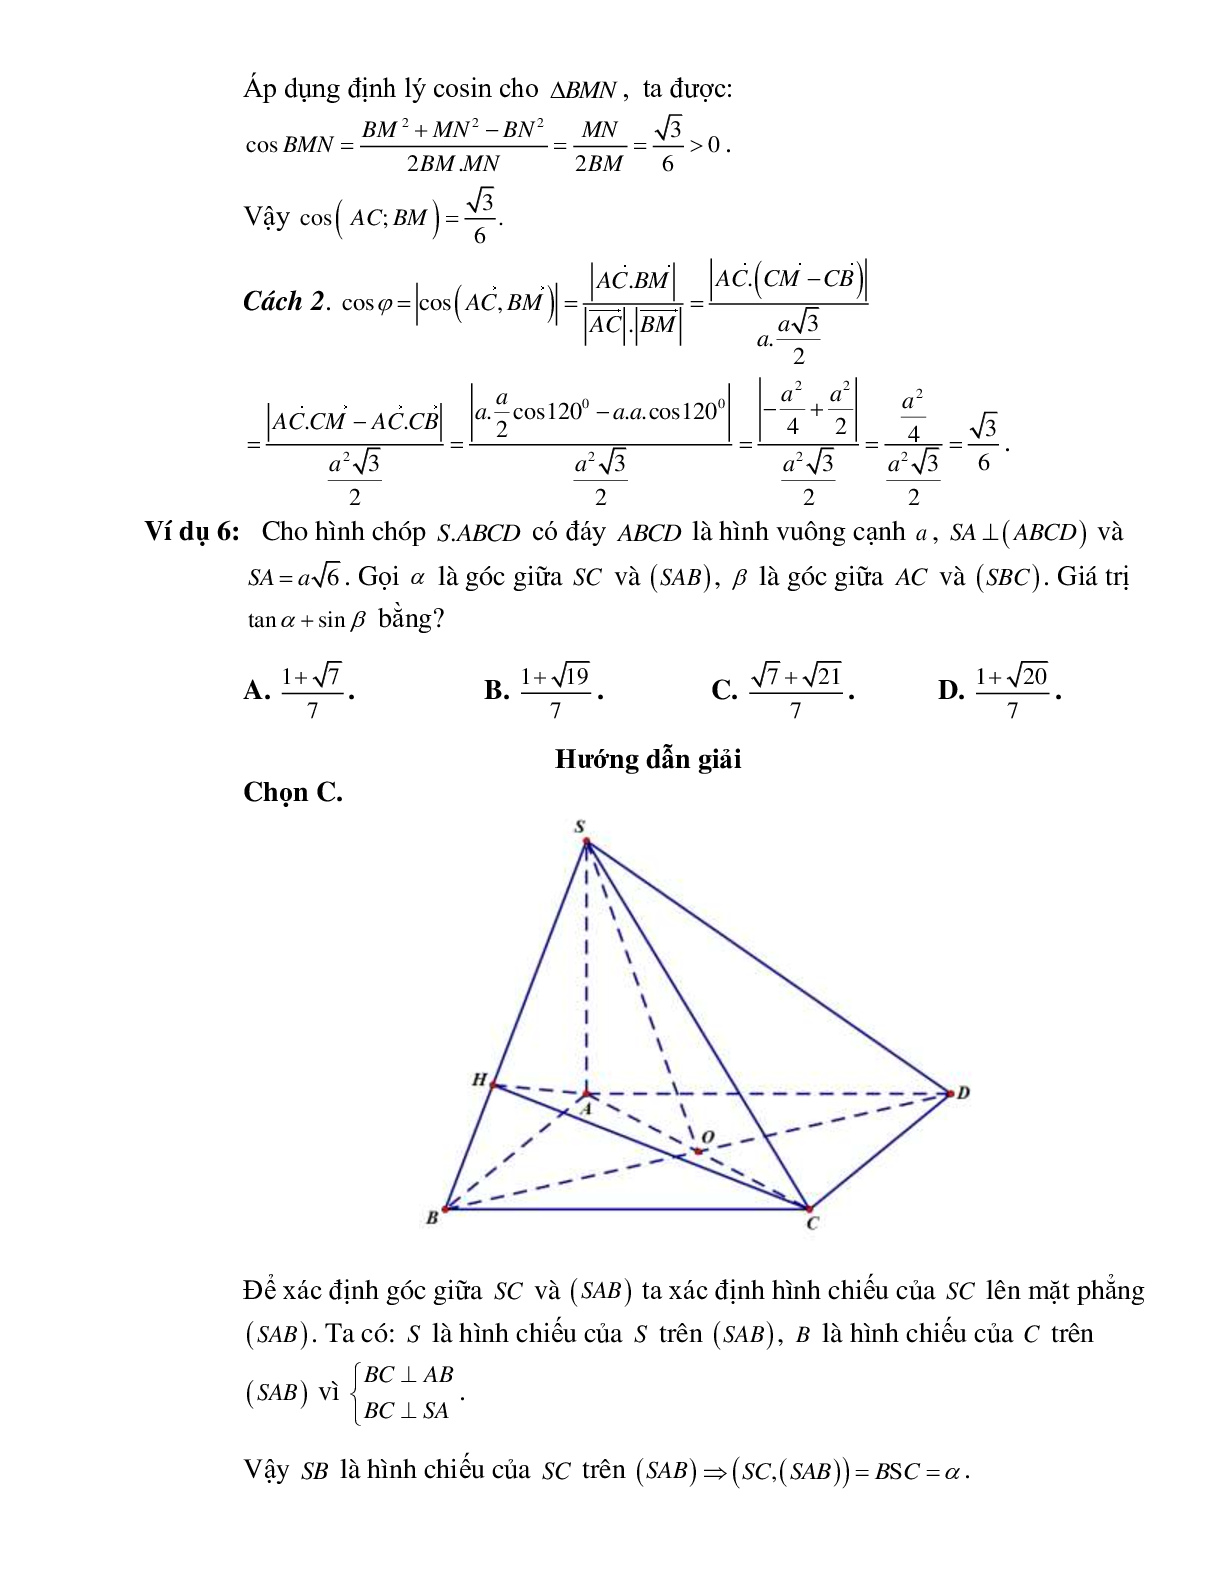 Bài tập Toán hình 11 Bài 2 có đáp án: Hai đường thẳng vuông góc (trang 5)